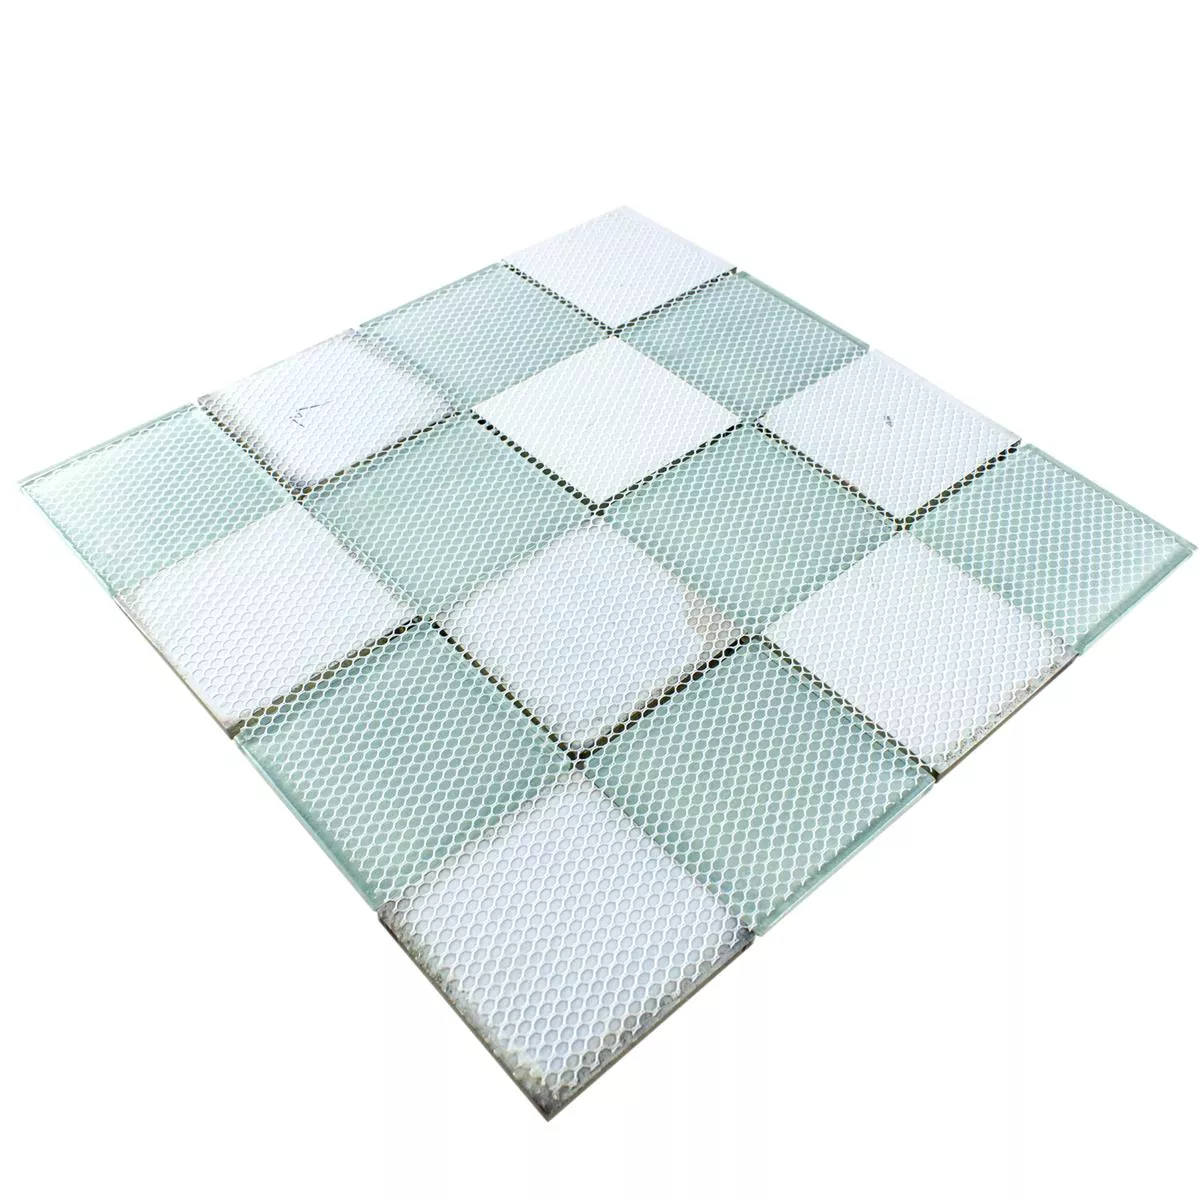 Mosaico de Cristal Azulejos Aspecto De Cemento Granada Beige Claro